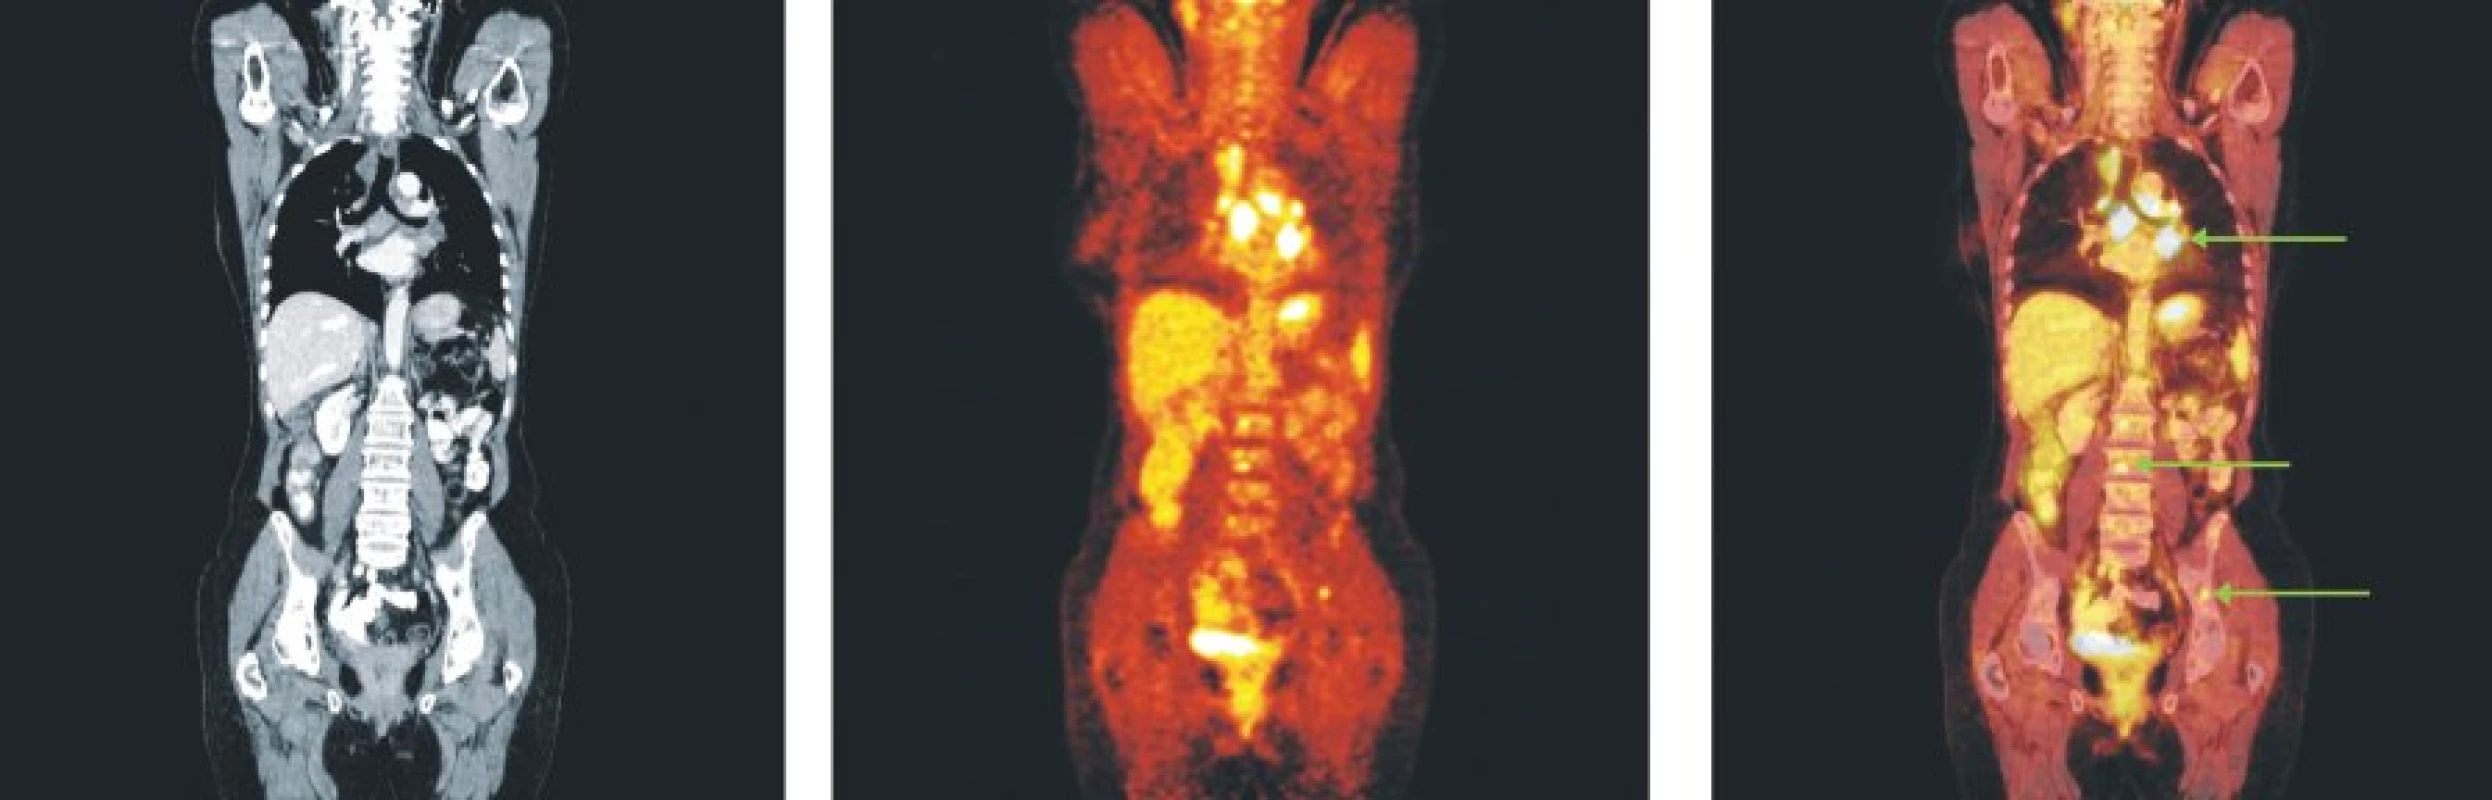 Snímky výpočetní tomografie (CT), pozitronové emisní tomografie (PET) a PET/CT u nemocného s folikulárním lymfomem stupně 3b a postižením lymfatických uzlin mediastina, skeletu páteře a pánve.